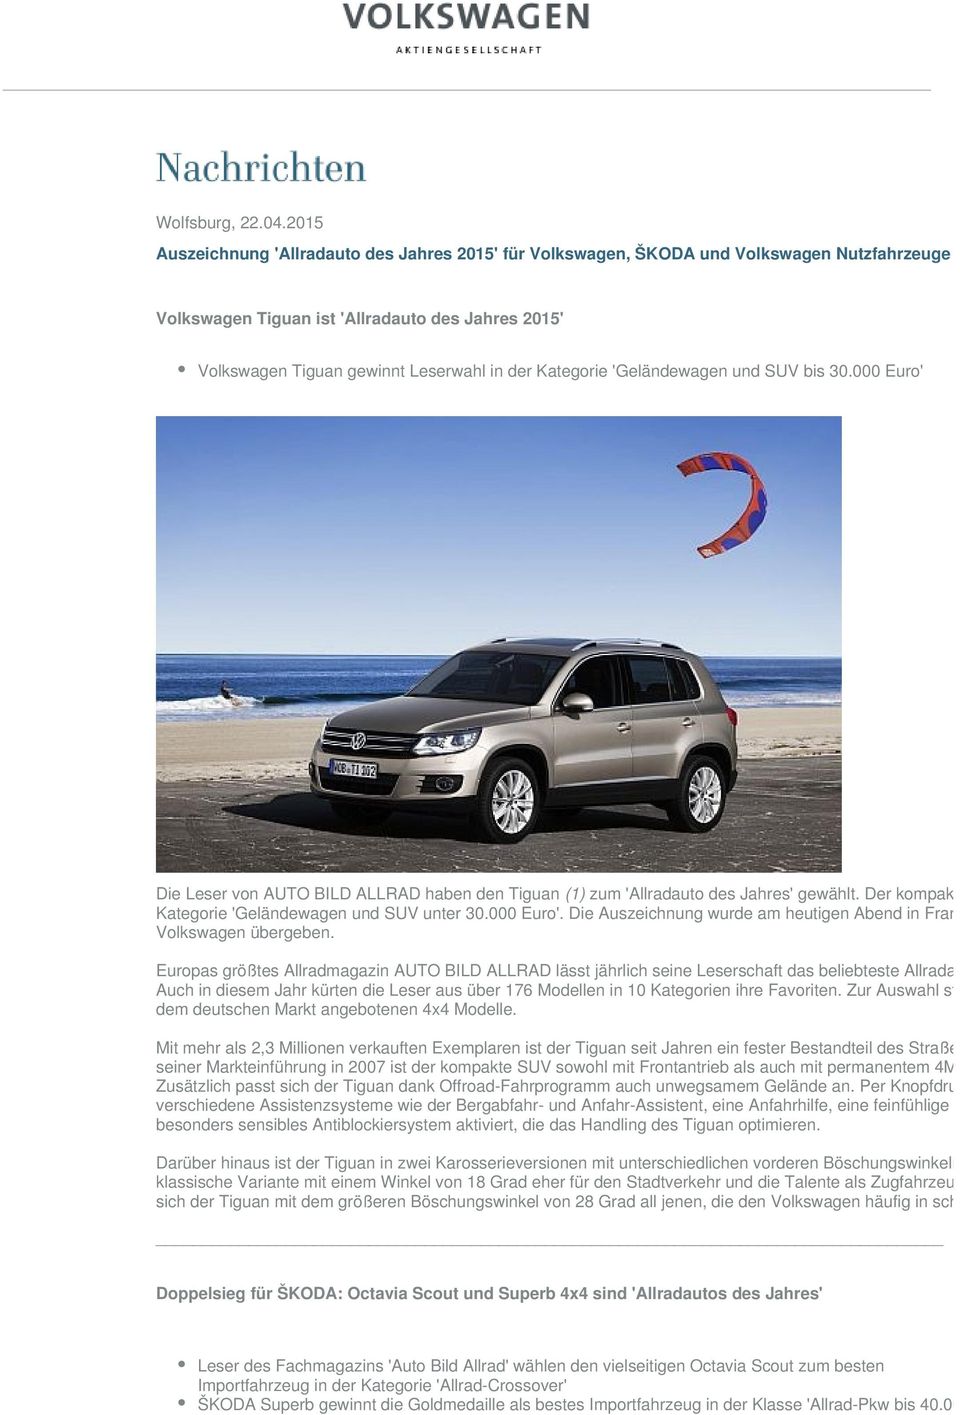 Kategorie 'Geländewagen und SUV bis 30.000 Euro' Die Leser von AUTO BILD ALLRAD haben den Tiguan (1) zum 'Allradauto des Jahres' gewählt.